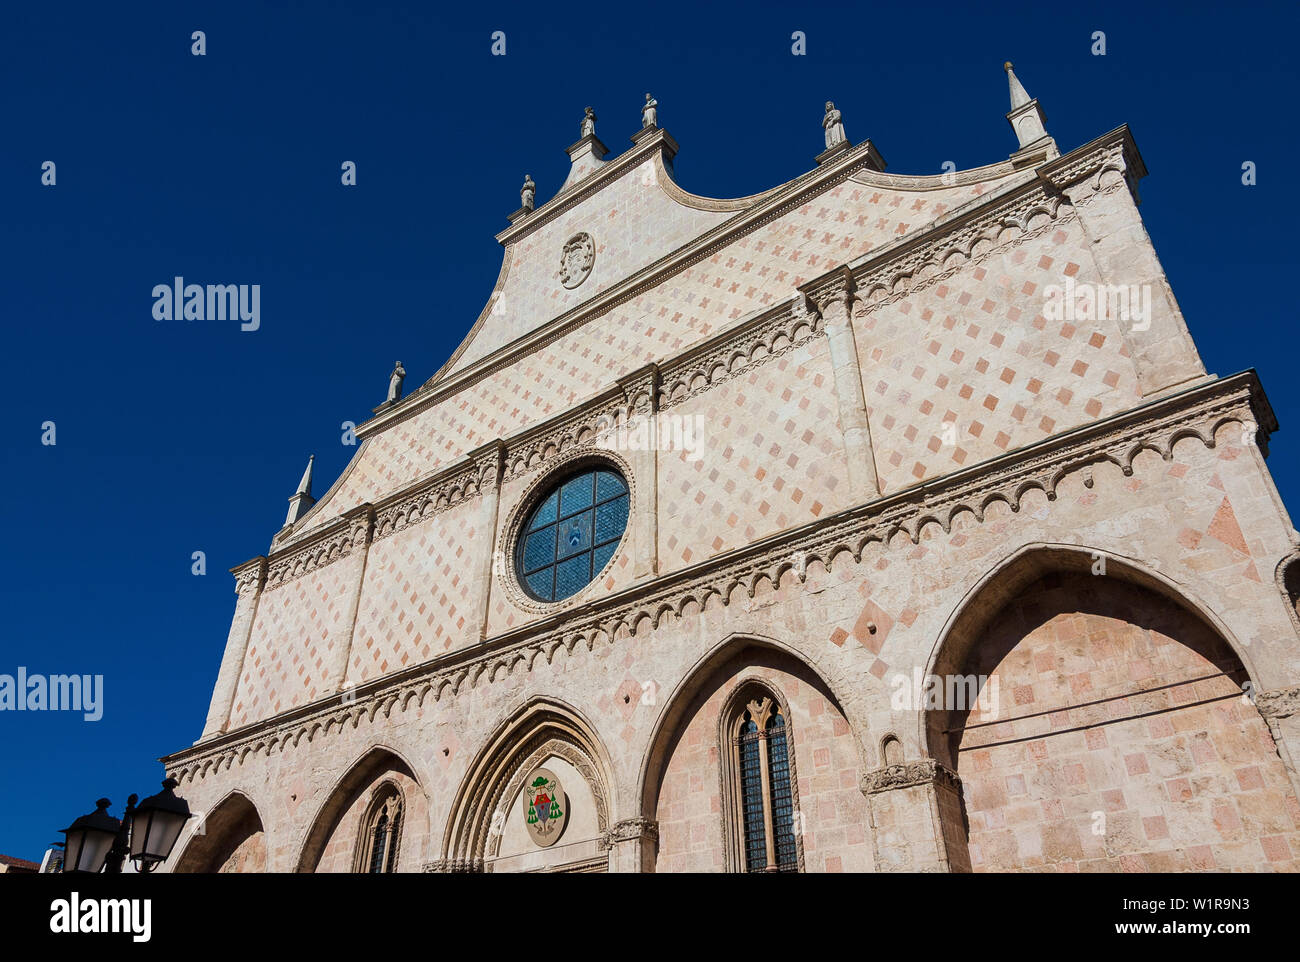 Schönen italienischen Vicenza Kathedrale verzierte gotische Fassade, im Jahr 1467 abgeschlossen Stockfoto